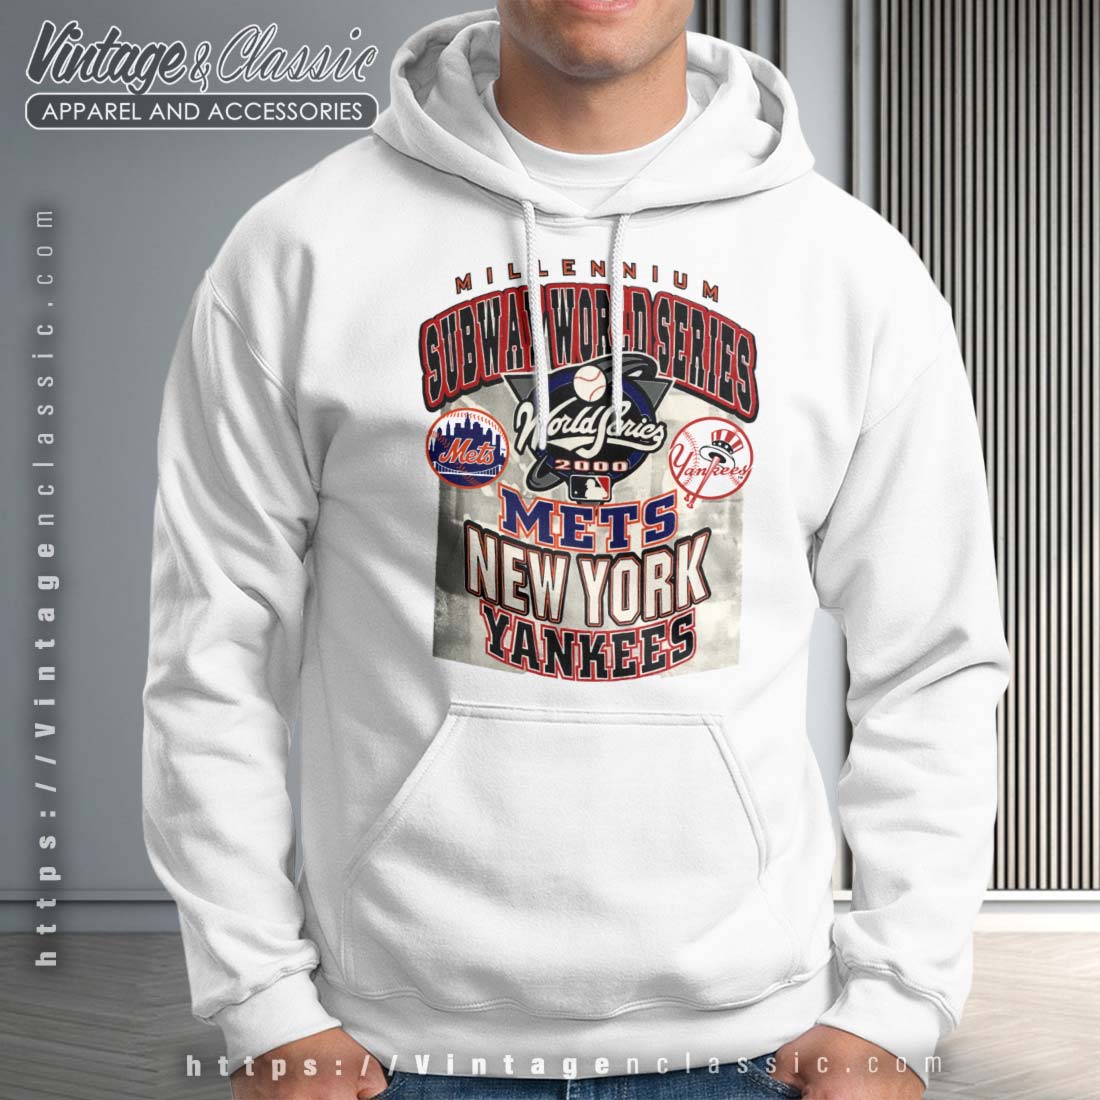 2000 New York Yankees World Subway Series Champions Sweatshirt